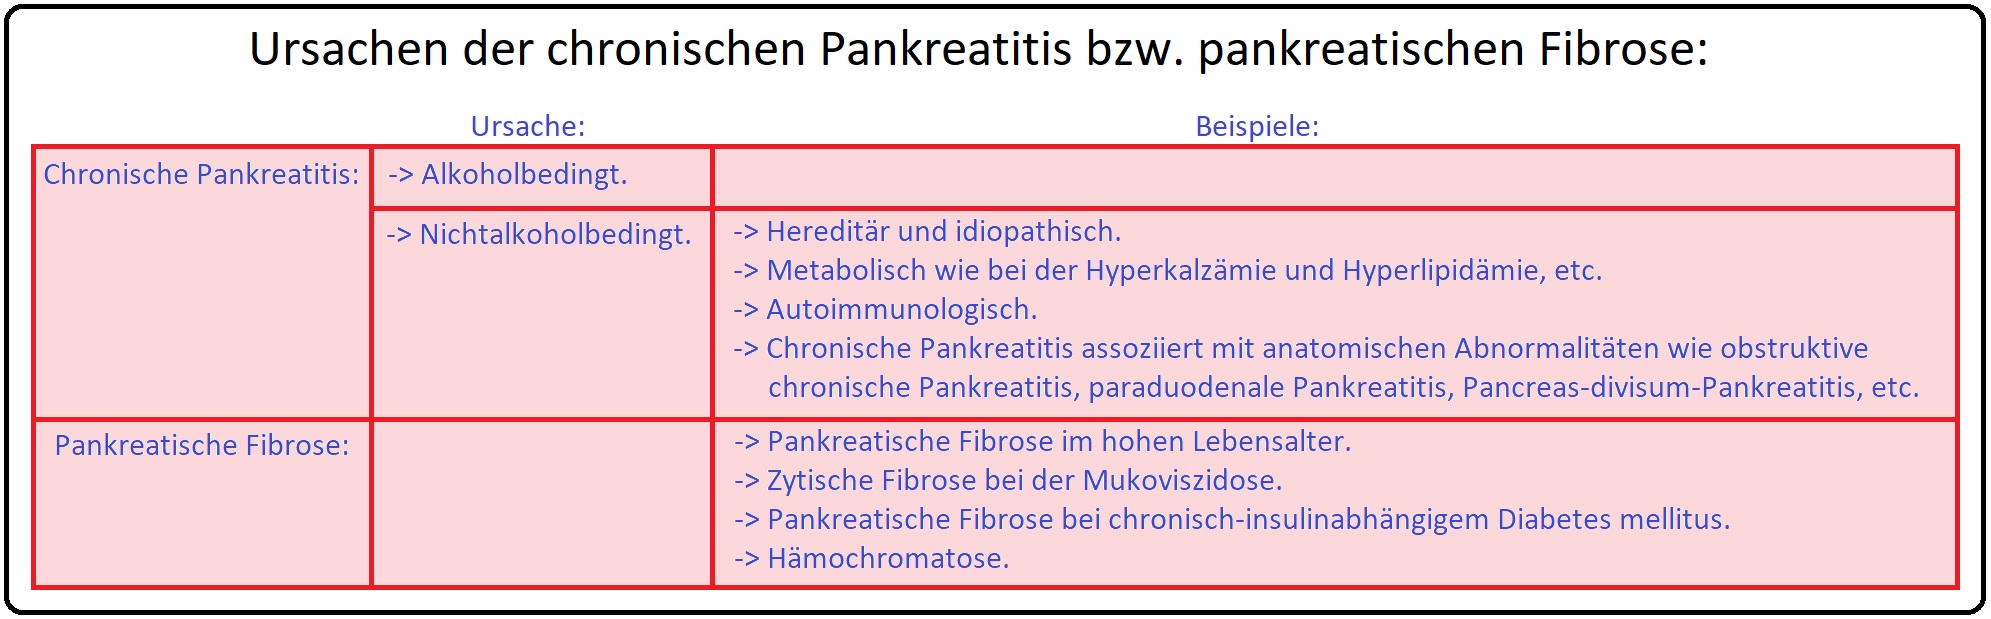 727 Ursachen der chronische Pankreatitis bzw. pankreatischen Fibrose